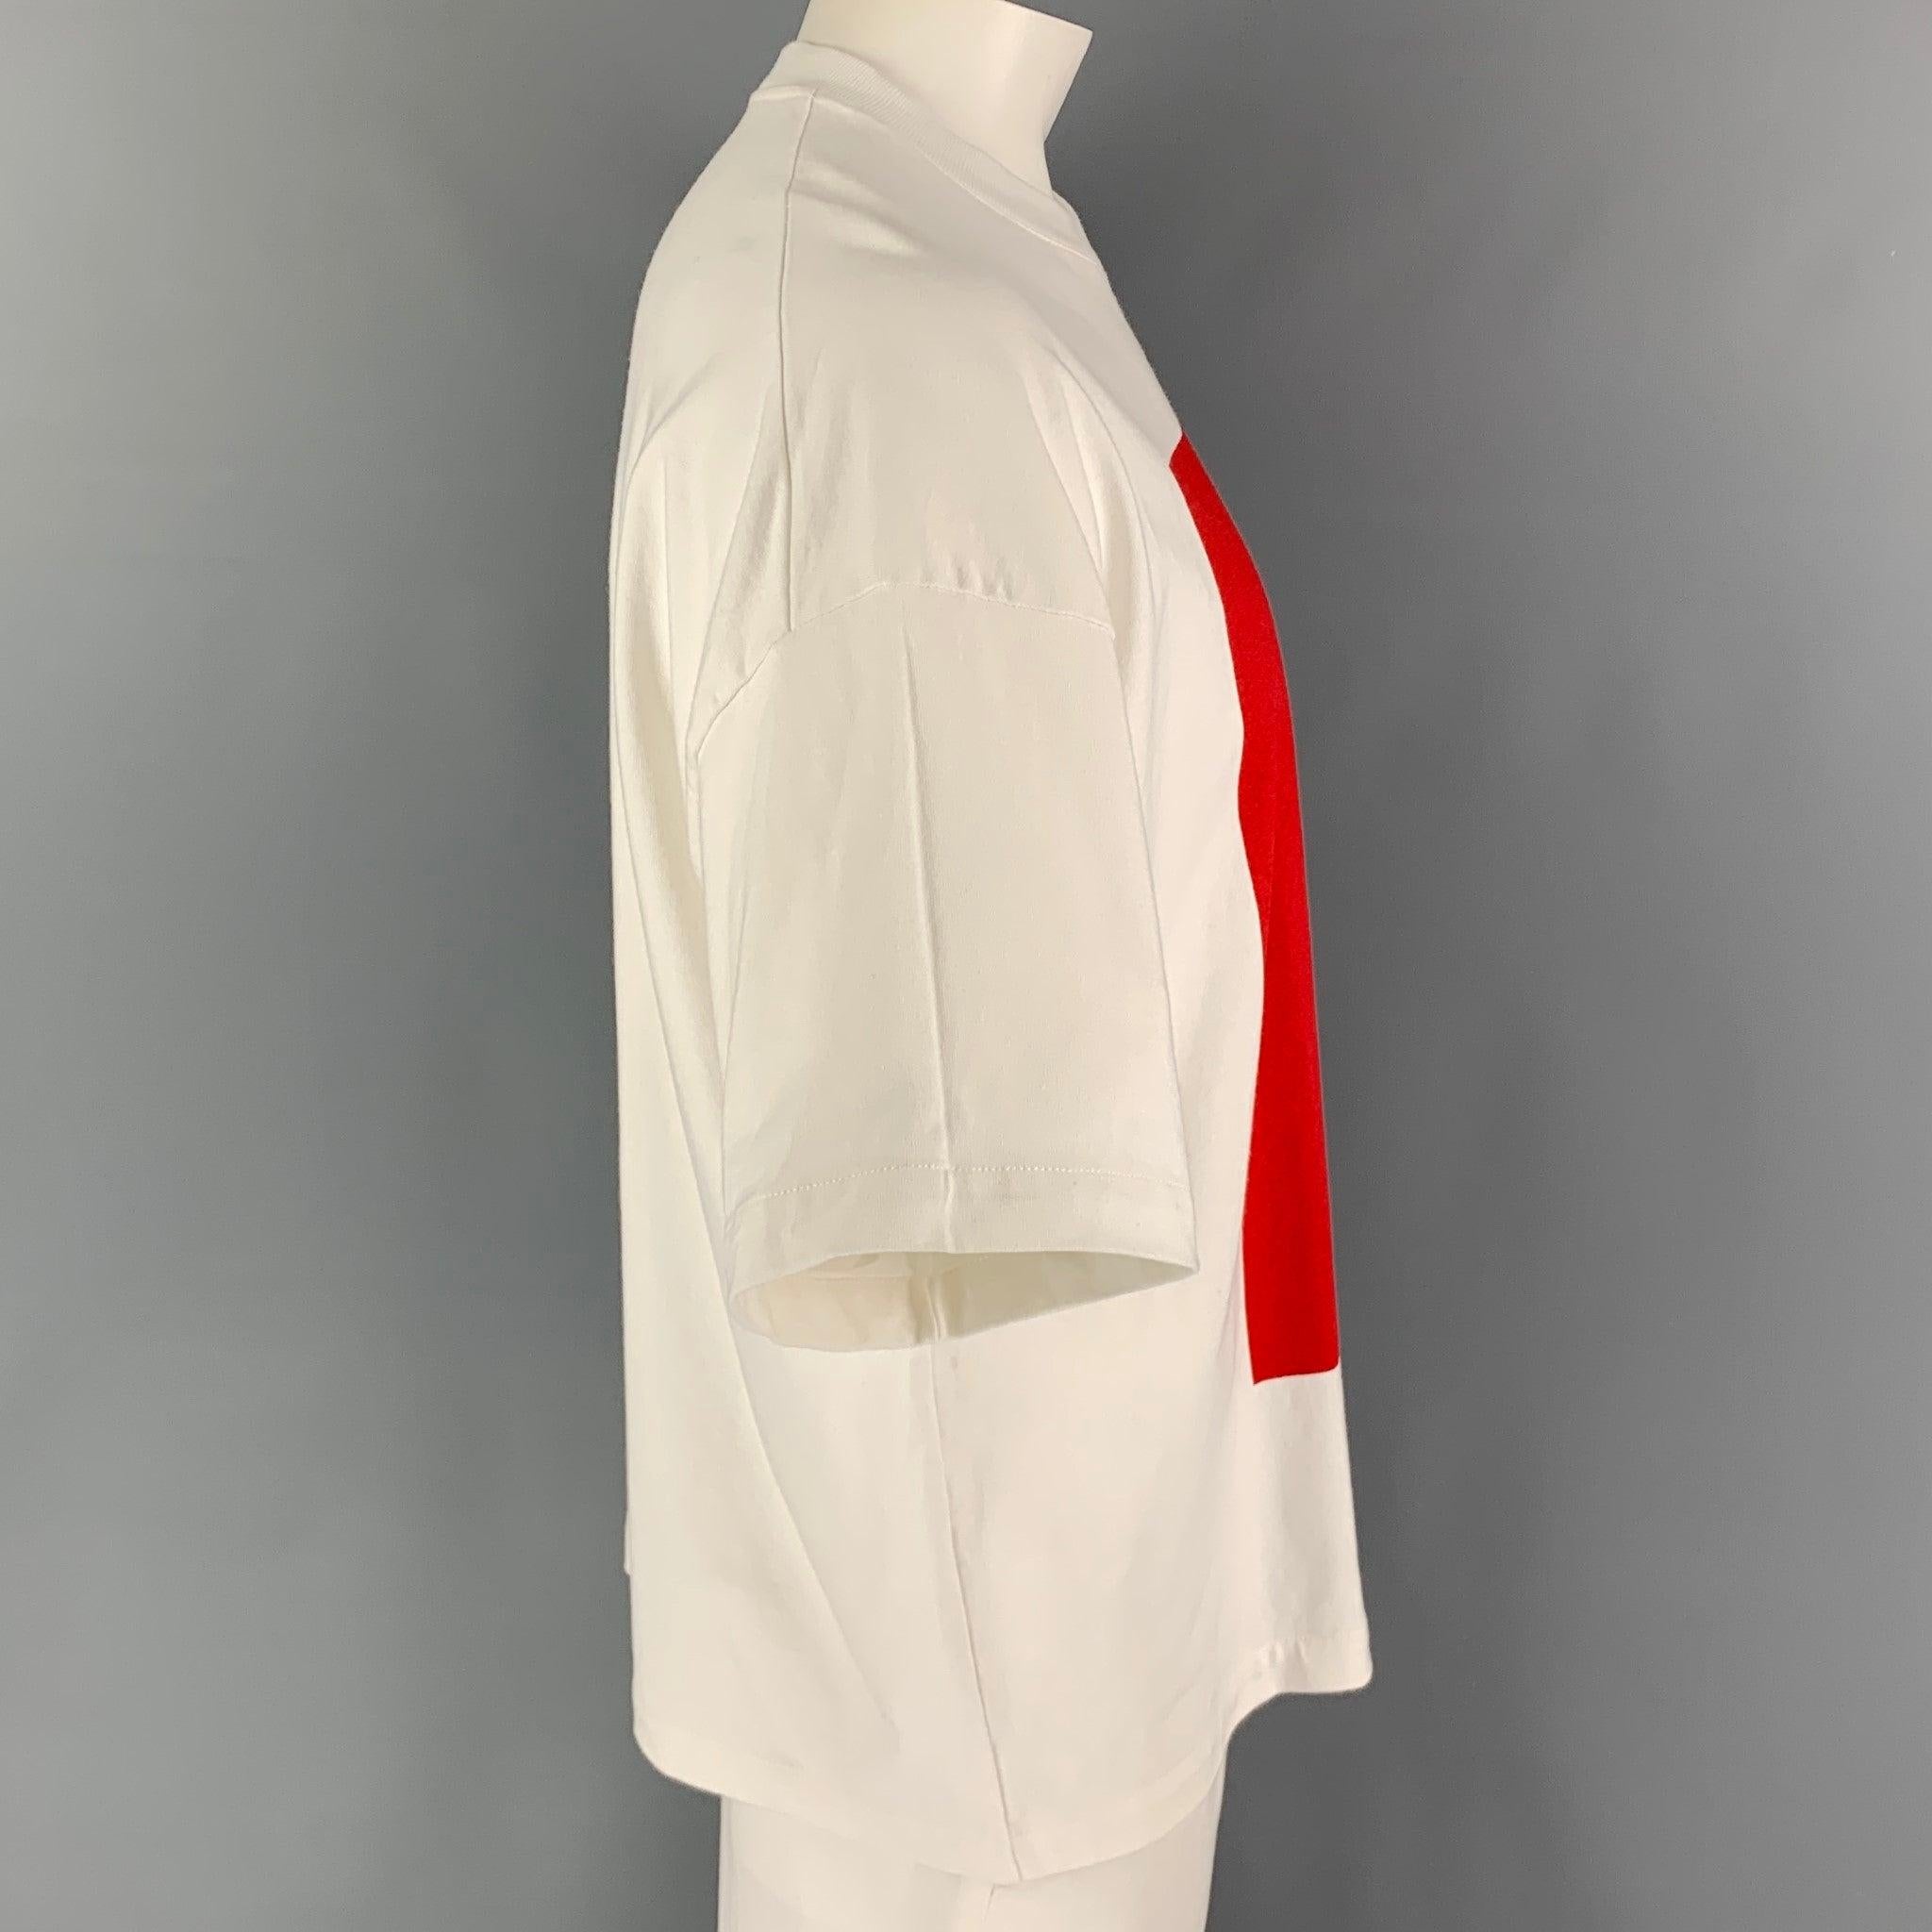 Le t-shirt JIL SANDER est en coton color block blanc et rouge, avec le logo 